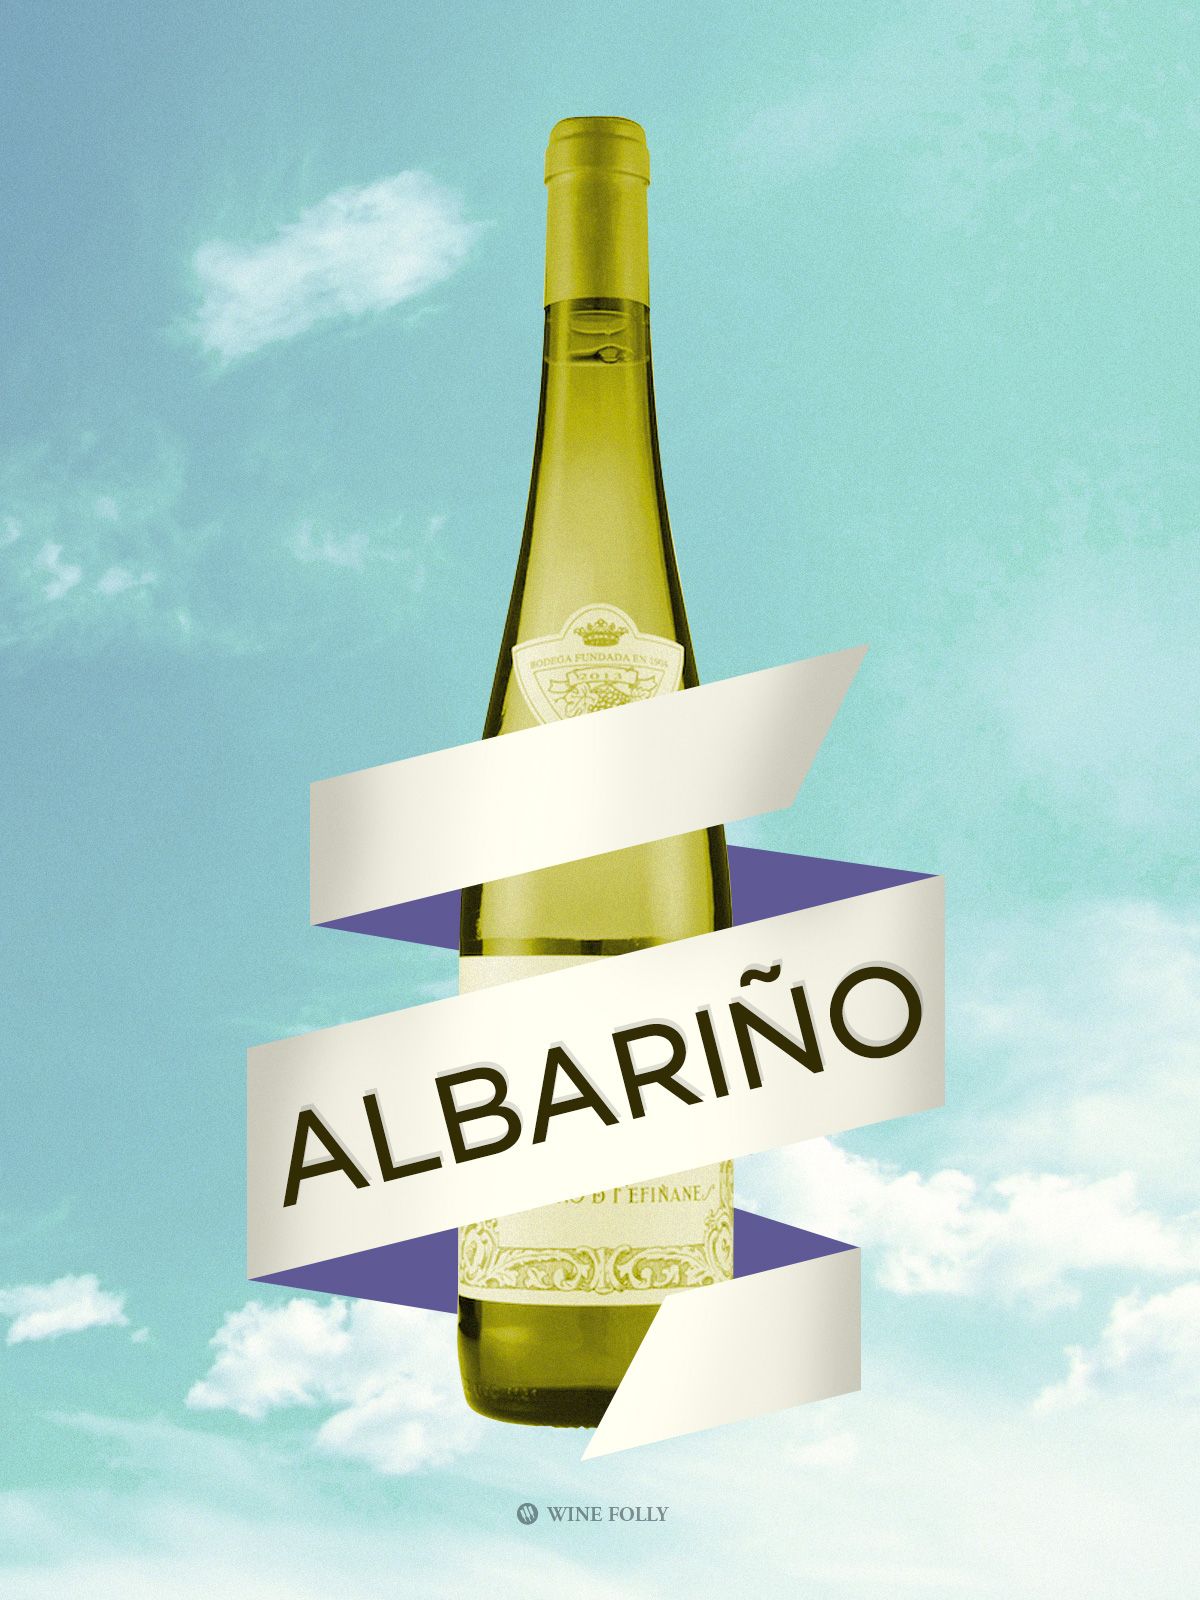 वाइन फॉली द्वारा स्पेन चित्रण से अल्बरीनो वाइन